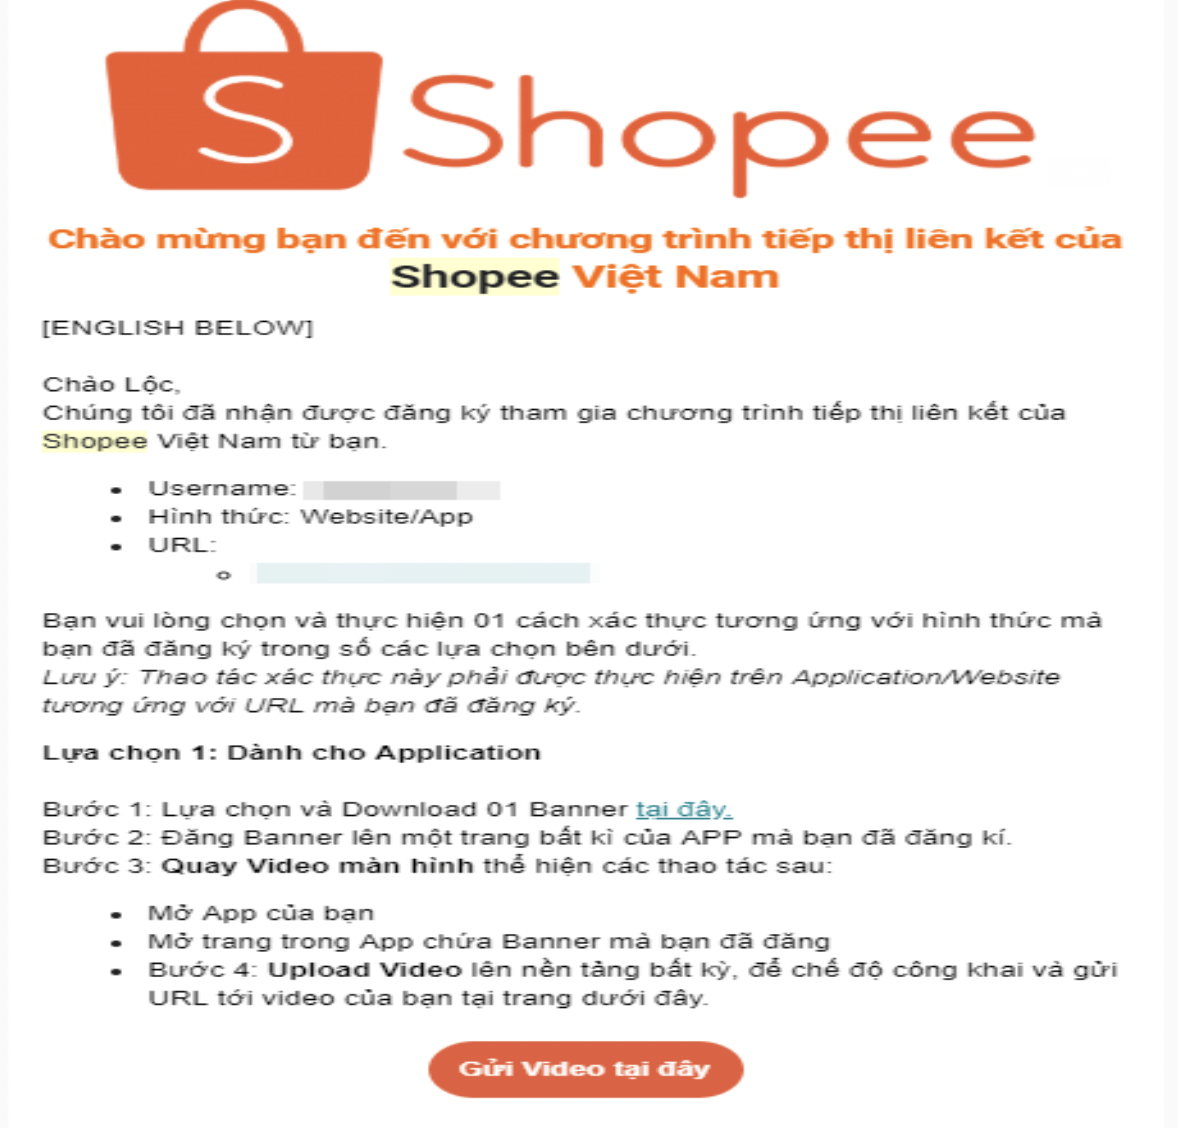 Tiến hành xác thực để hoàn tất đăng ký Shopee Affiliate